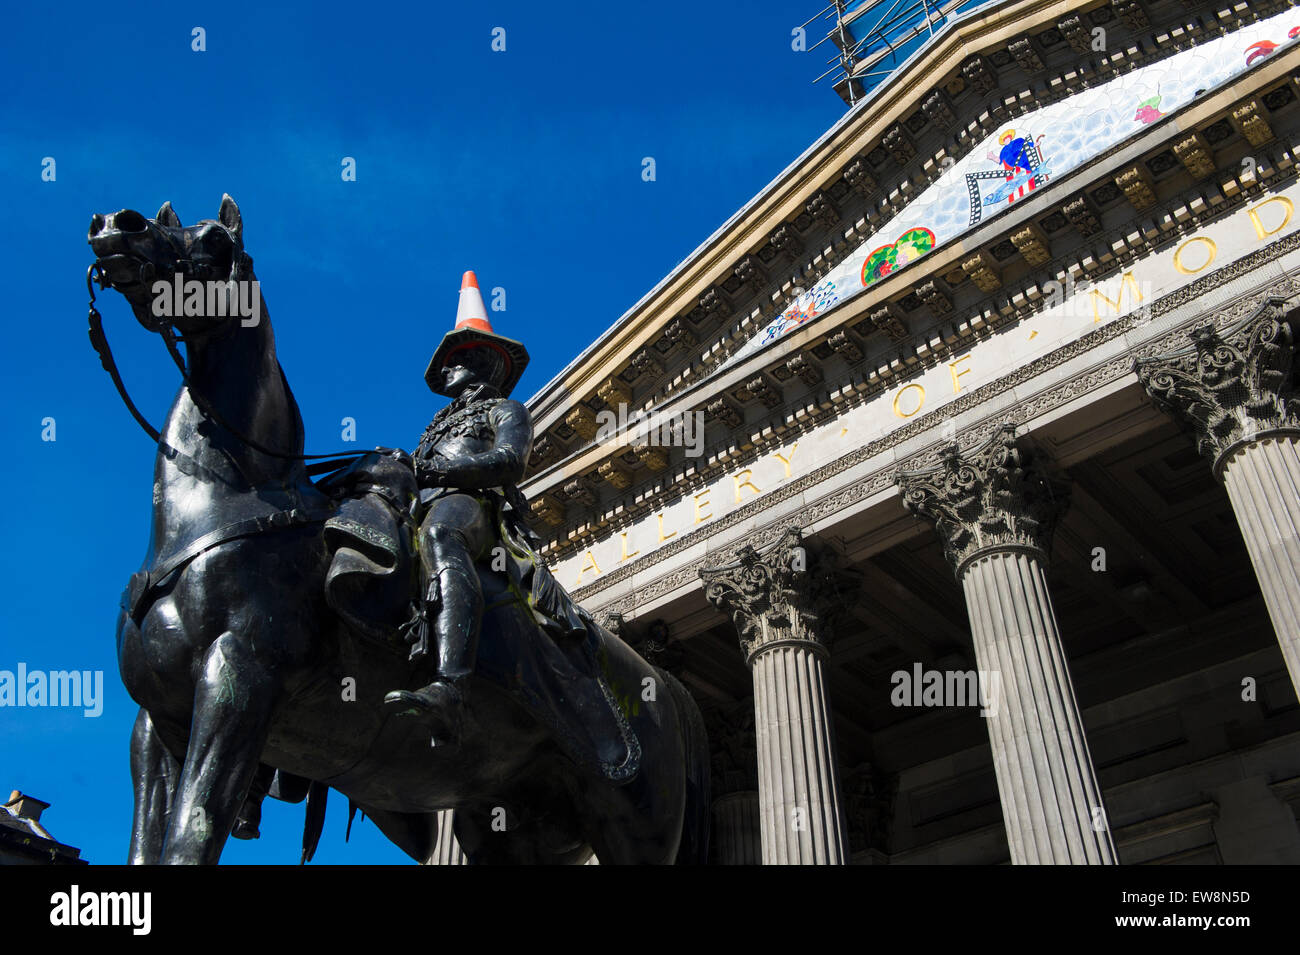 Estatua del Duque de Wellington, con conos de tráfico fuera del Museo de Arte Moderno de Glasgow, Escocia, con un cono de tráfico sobre su cabeza. Foto de stock